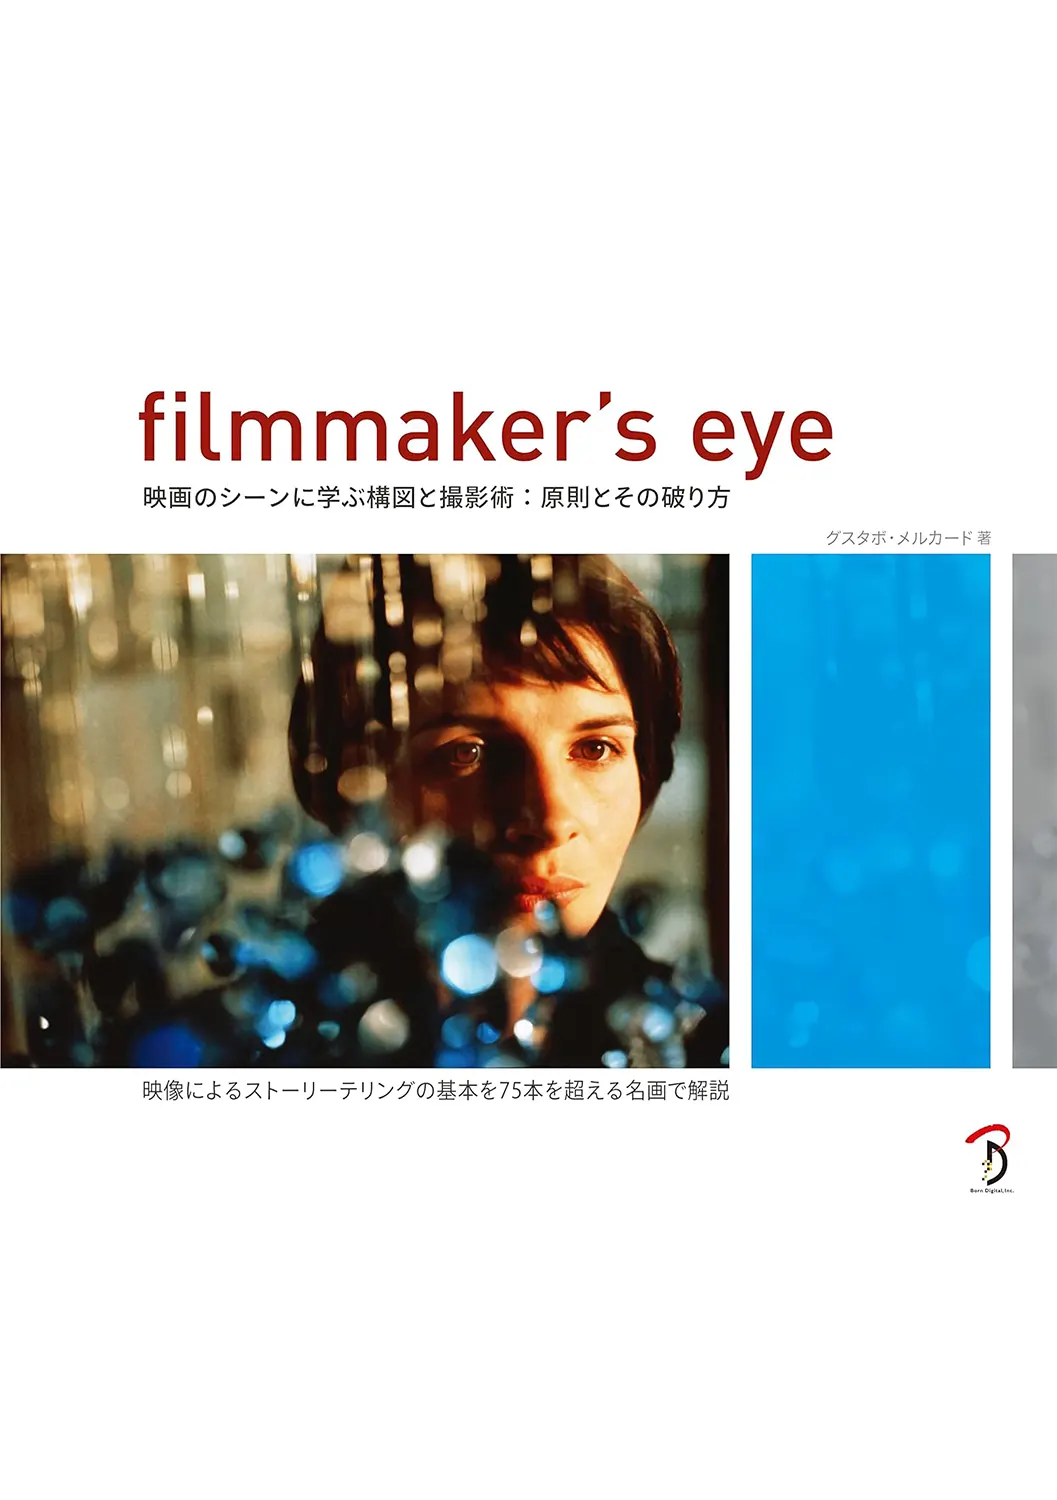 Filmmaker's Eye 映画のシーンに学ぶ構図と撮影術